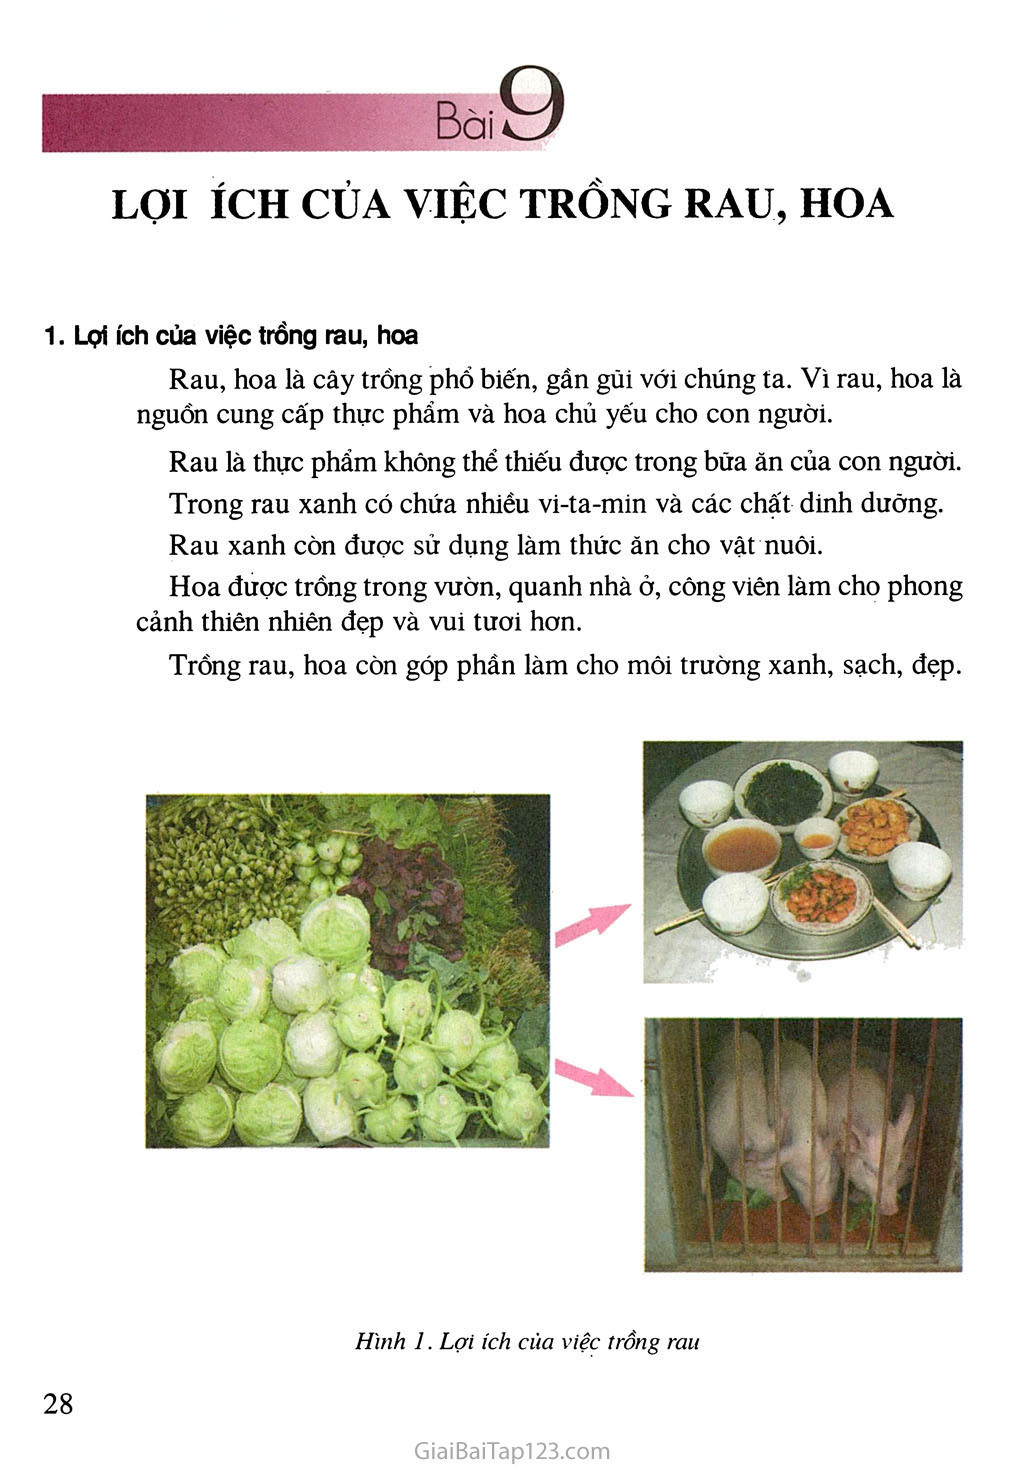 Bài 9. Lợi ích của việc trồng rau, hoa trang 2